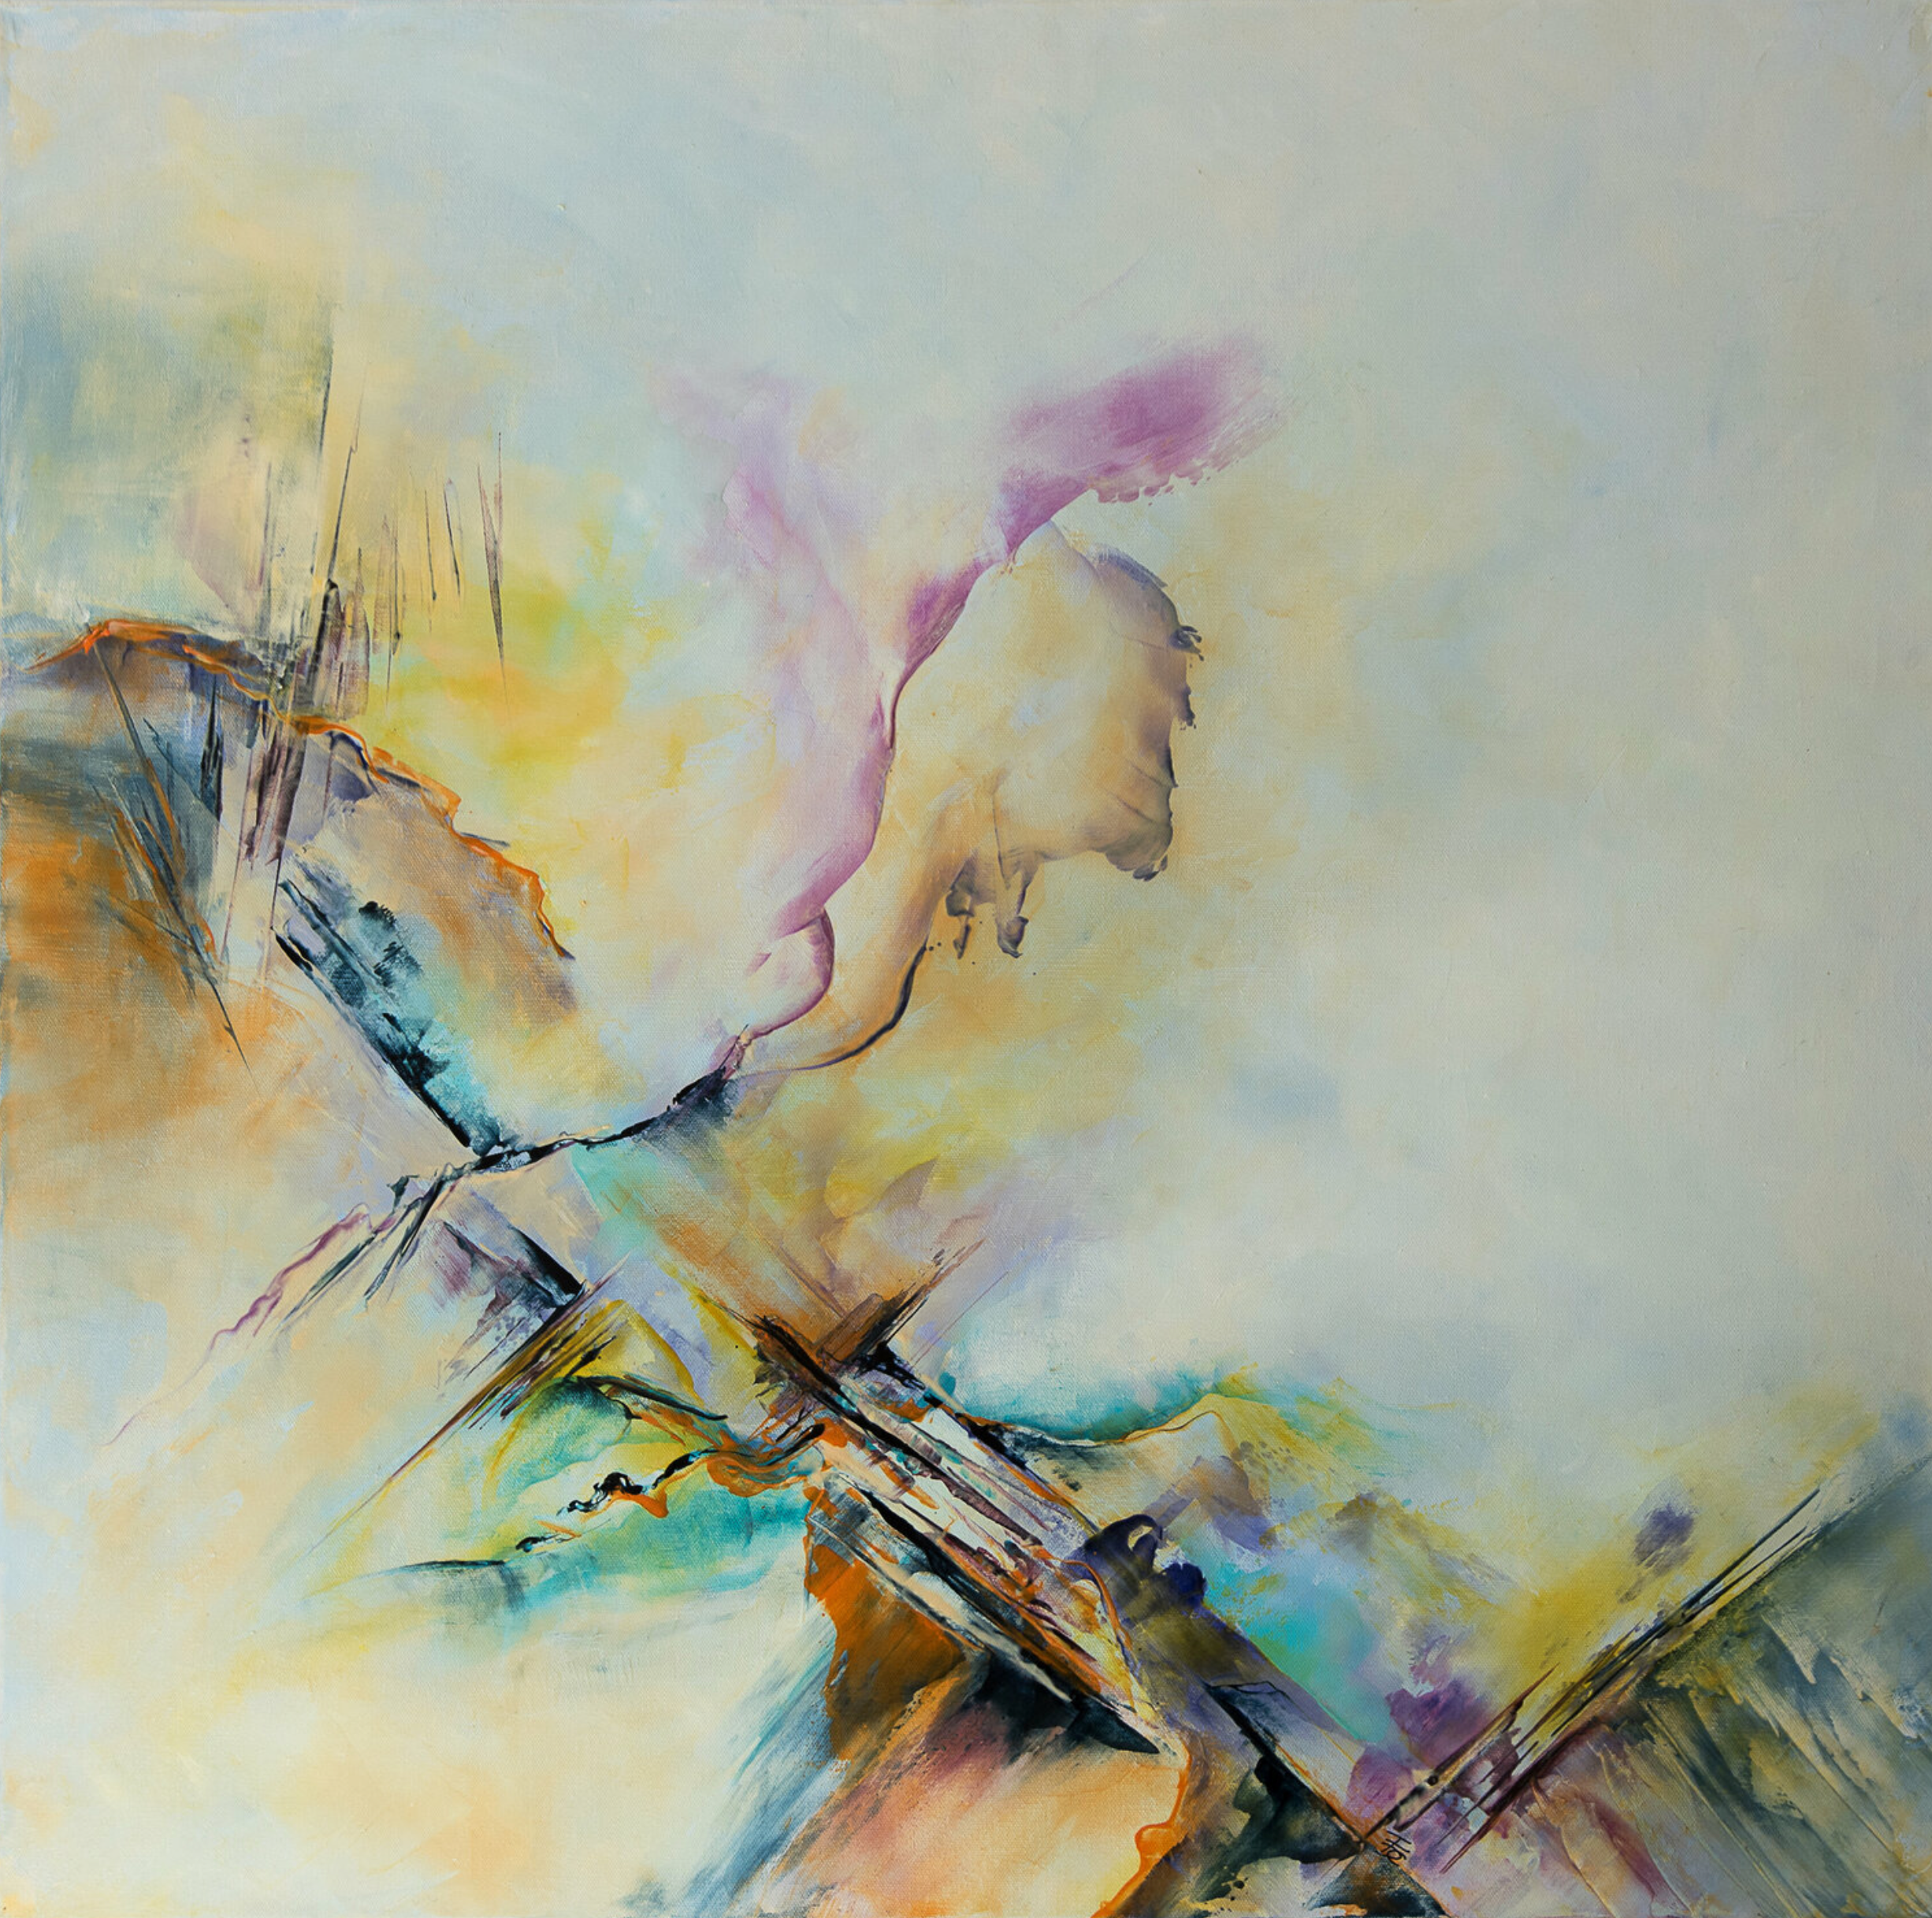 Il dipinto astratto "Sirius" di Françoise Dugourd-Caput mostra un vortice di colori che ricorda la natura e lo scorrere del tempo, a volte reso rapidamente visibile da spigoli vivi e in altri momenti rilassato e sereno da colori morbidi, piacevoli e pastosi.